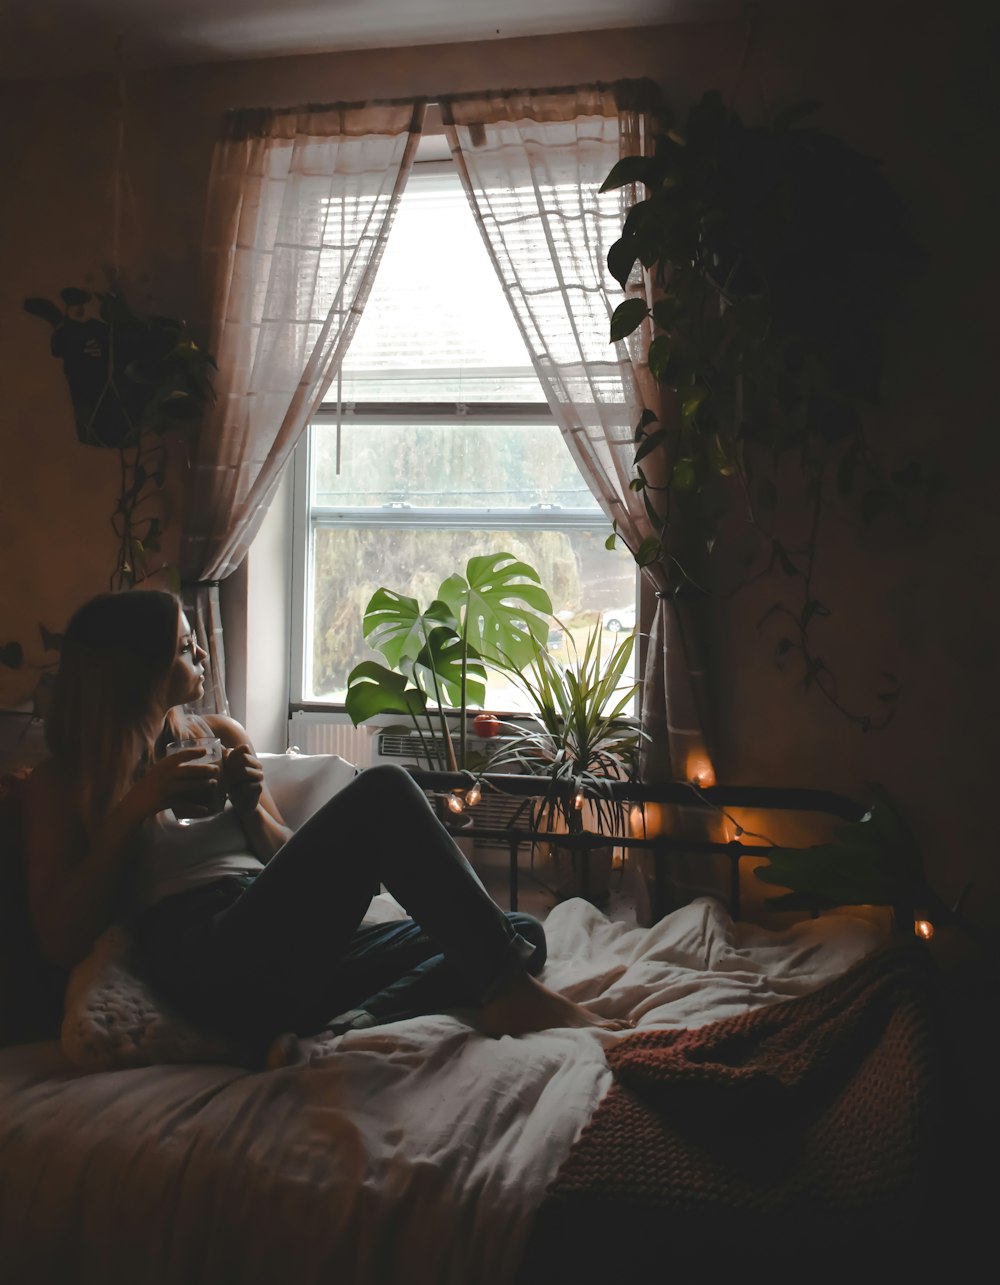 Una mujer sentada en una cama frente a una ventana